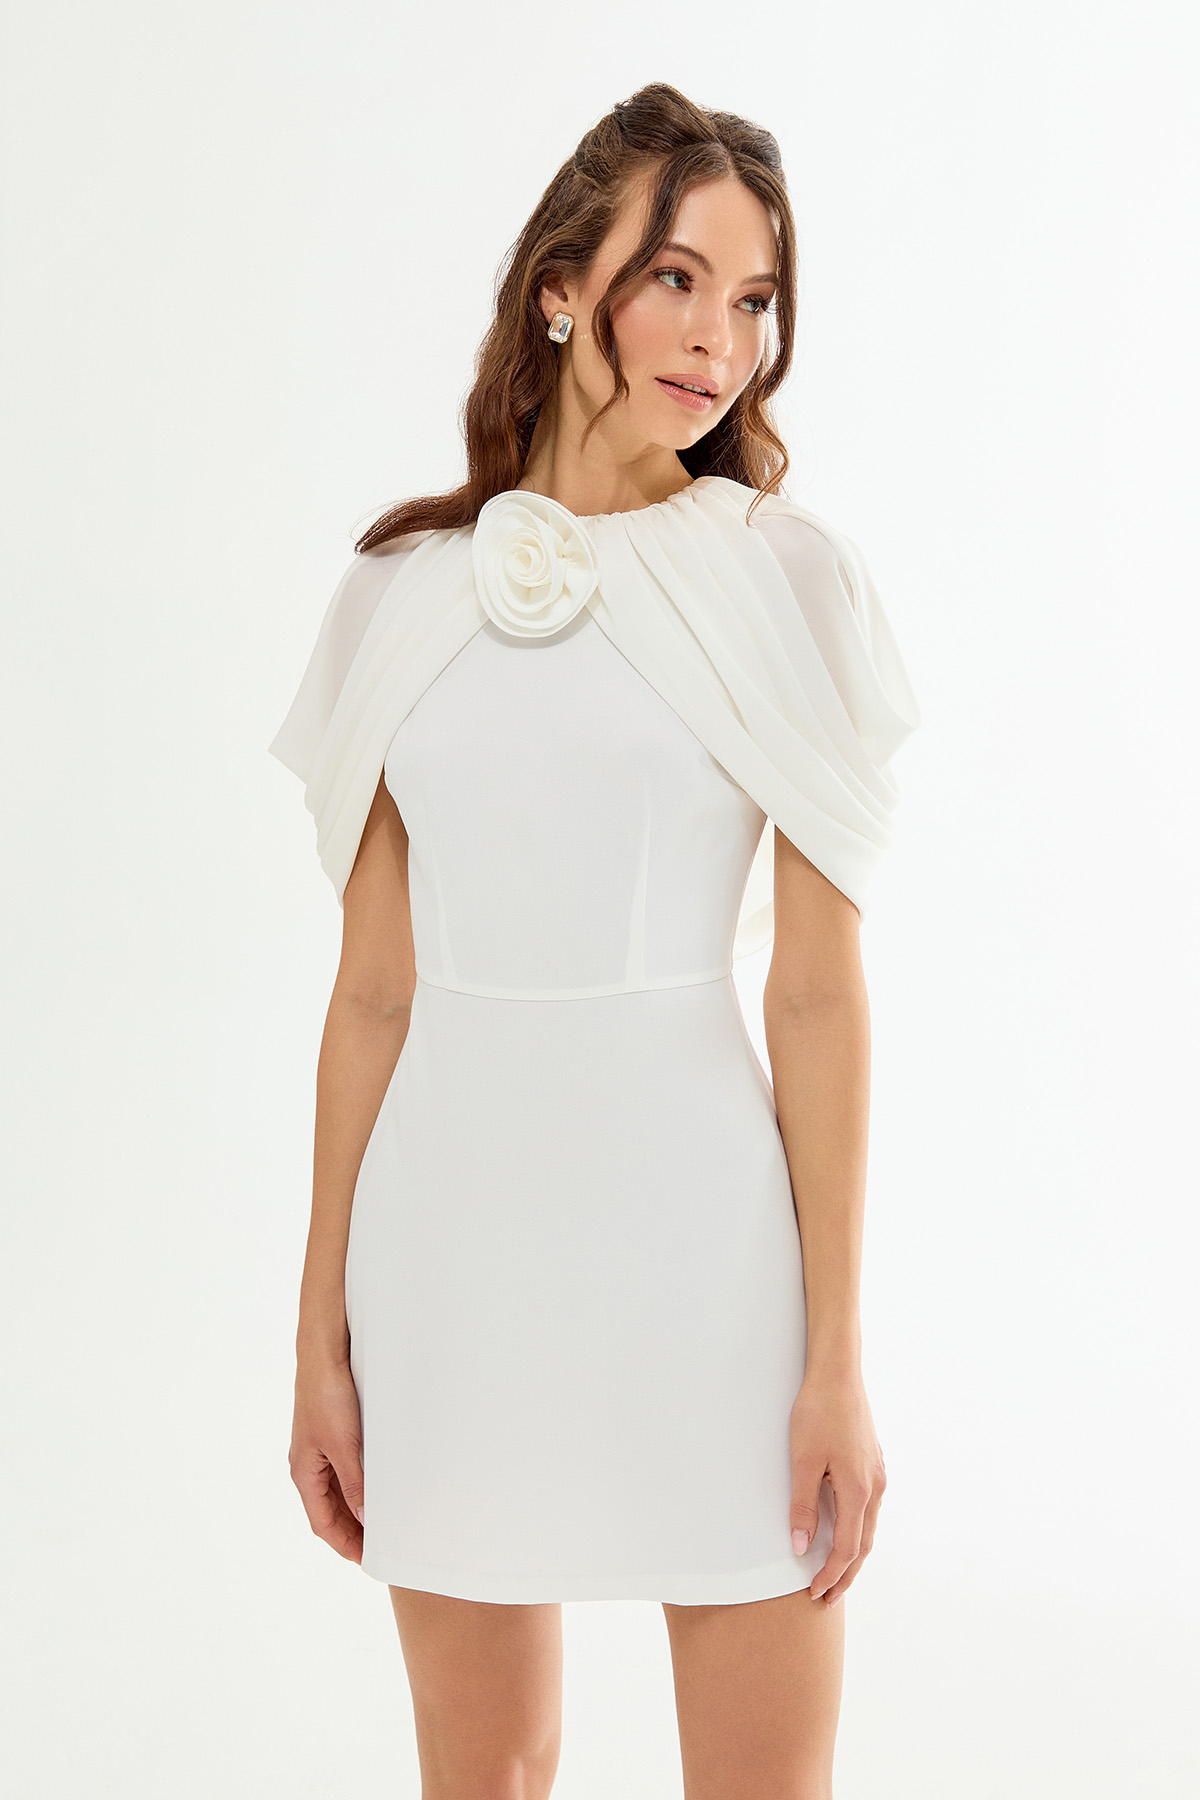 SHERI Rose Detailed Cape Mini White Dress